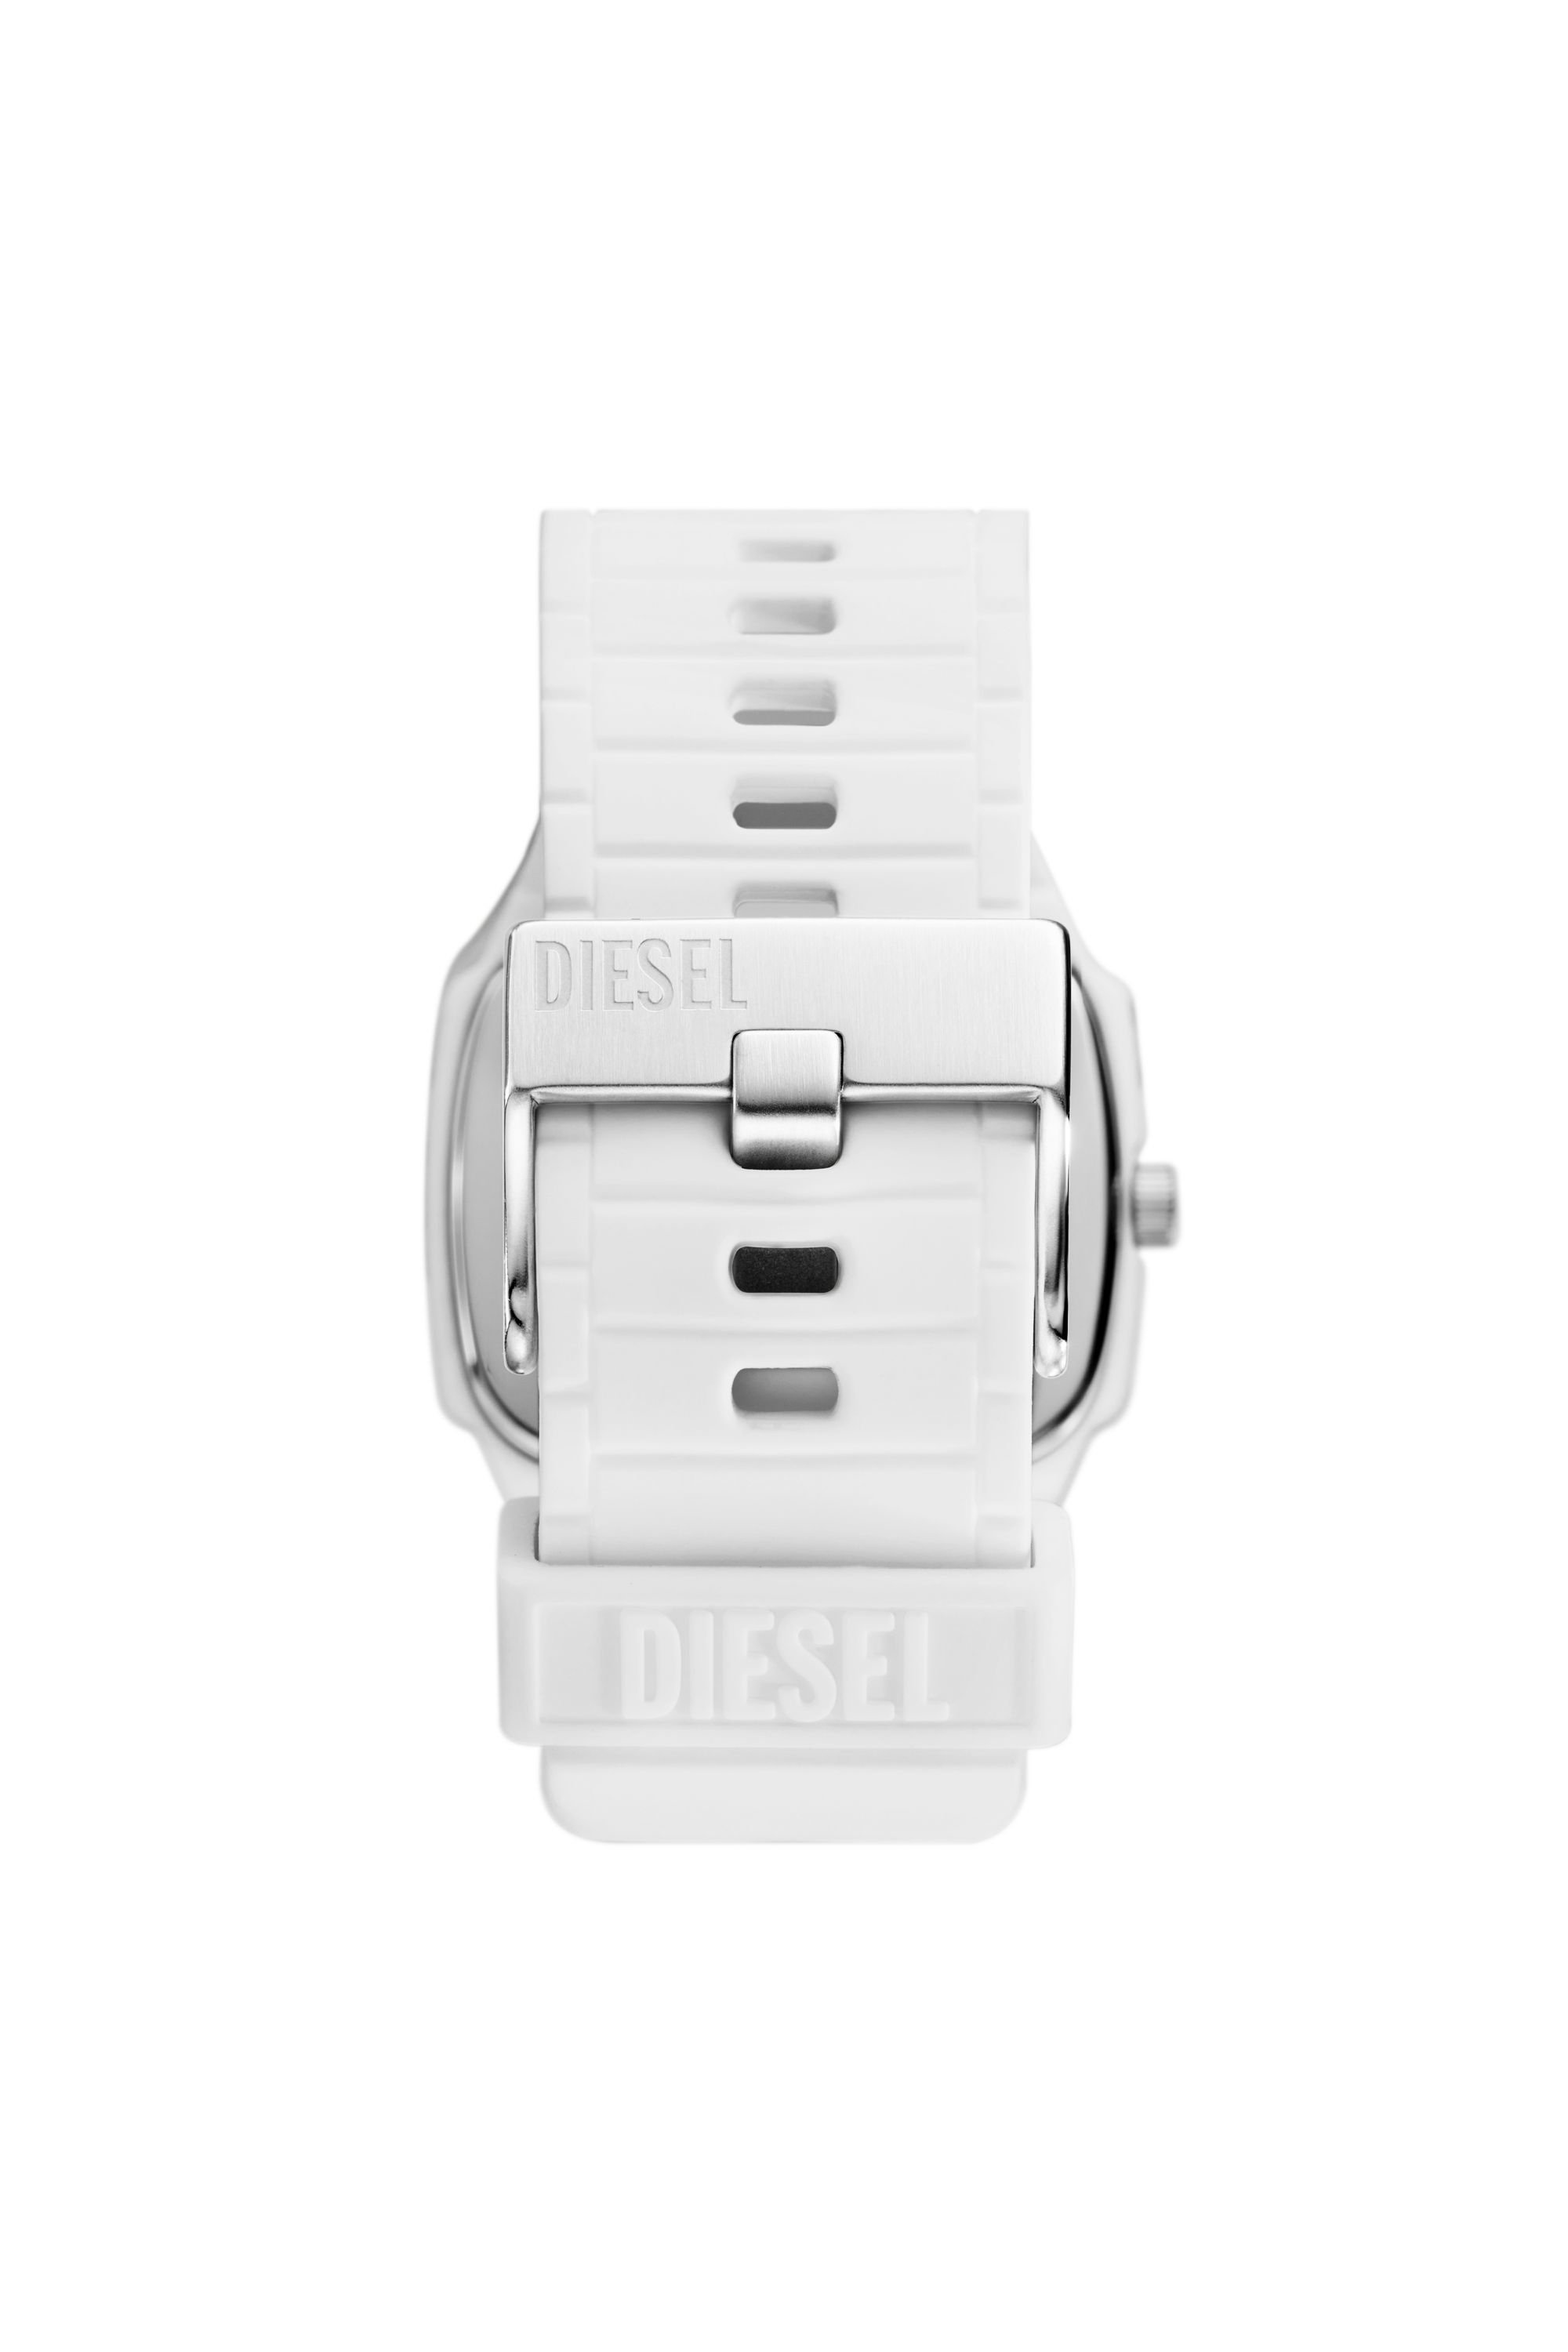 Diesel - DZ2204, Blanc - Image 2